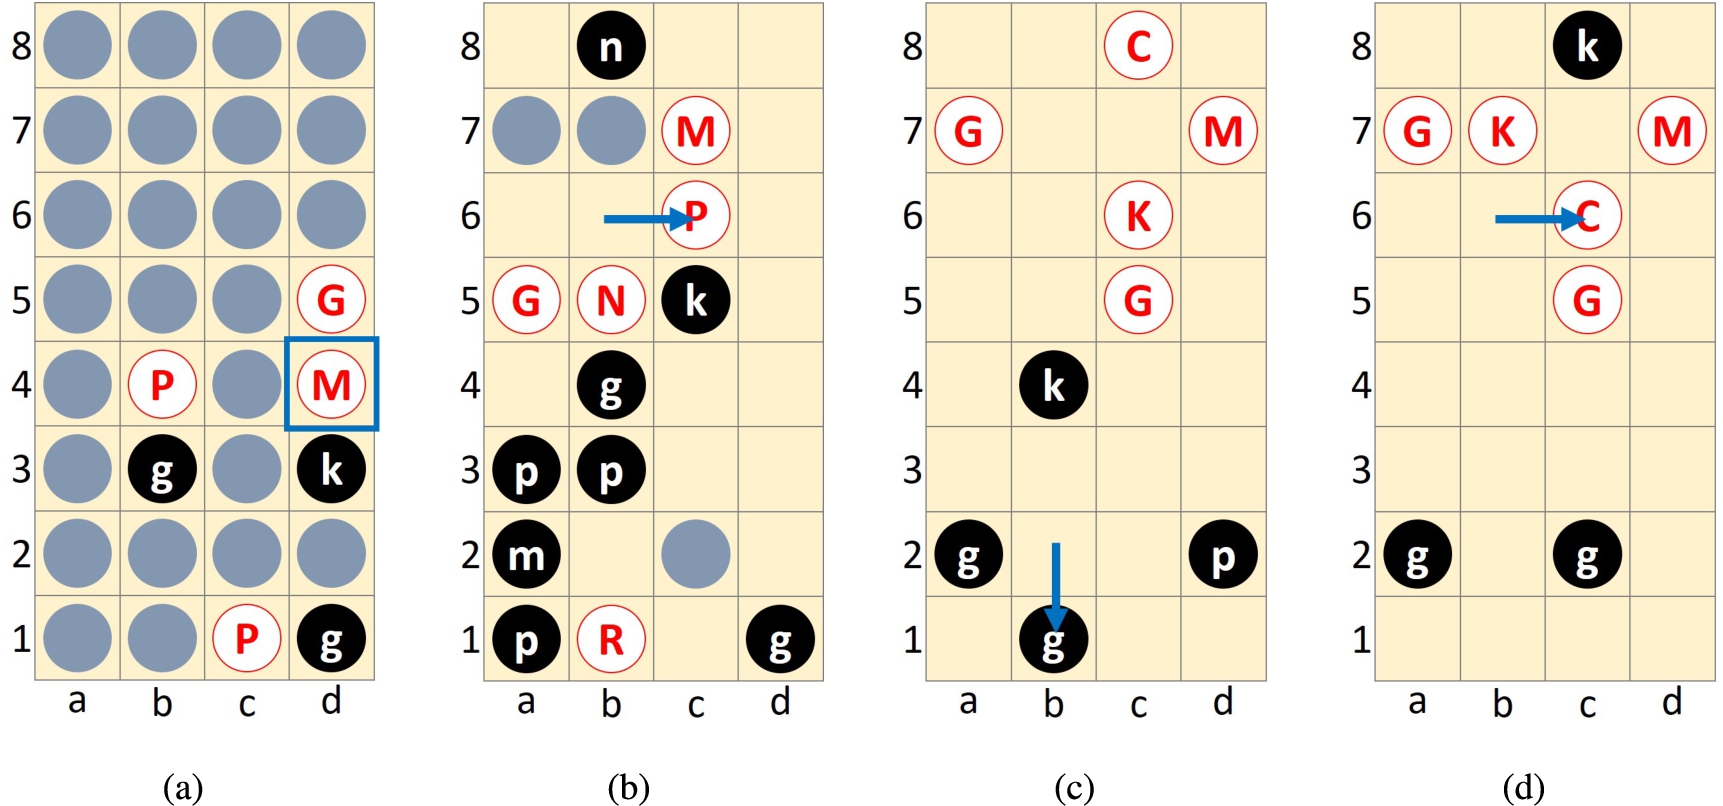 Game 1 (a) 7th ply d4(M) and (b) 66th ply b6-c6 and Game 2 (c) 281st ply b2-b1 and (d) 380th ply b6-c6.